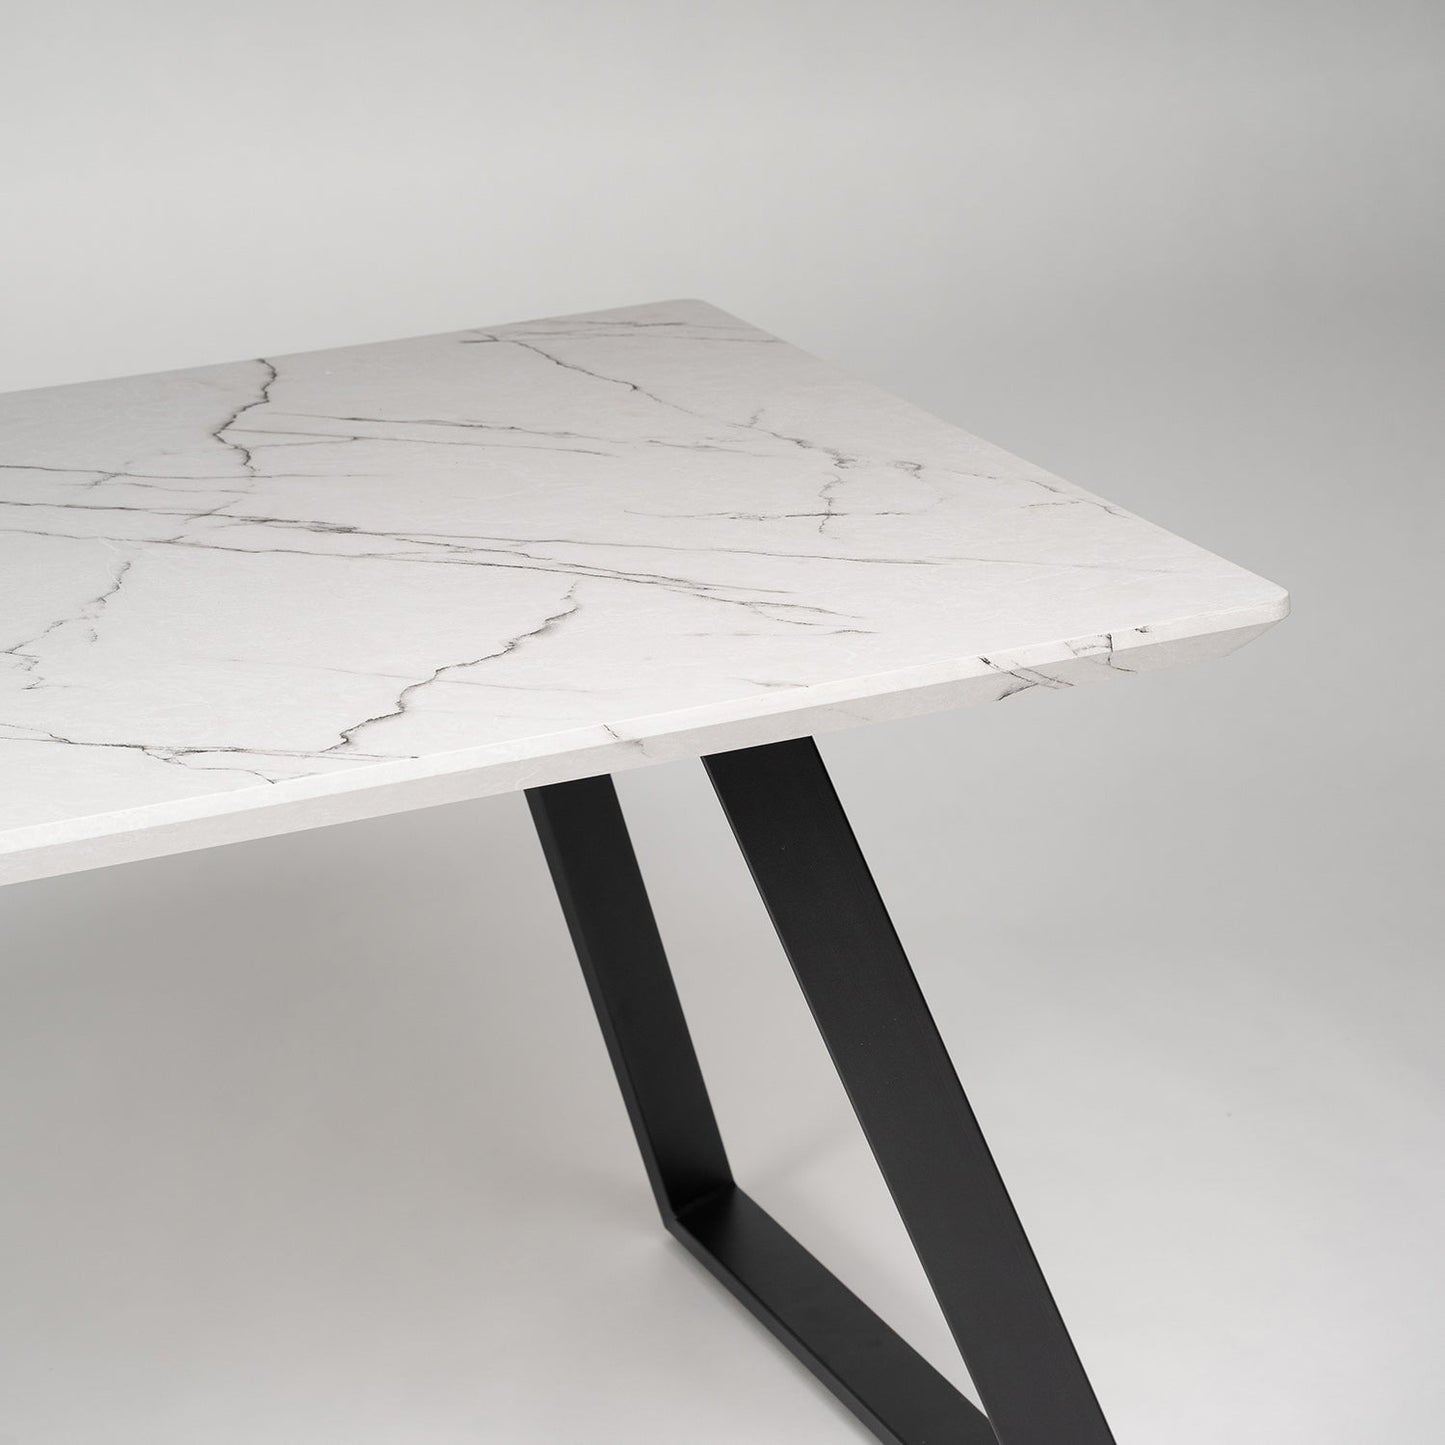 Atlas Marble Effect dining table - metal legs